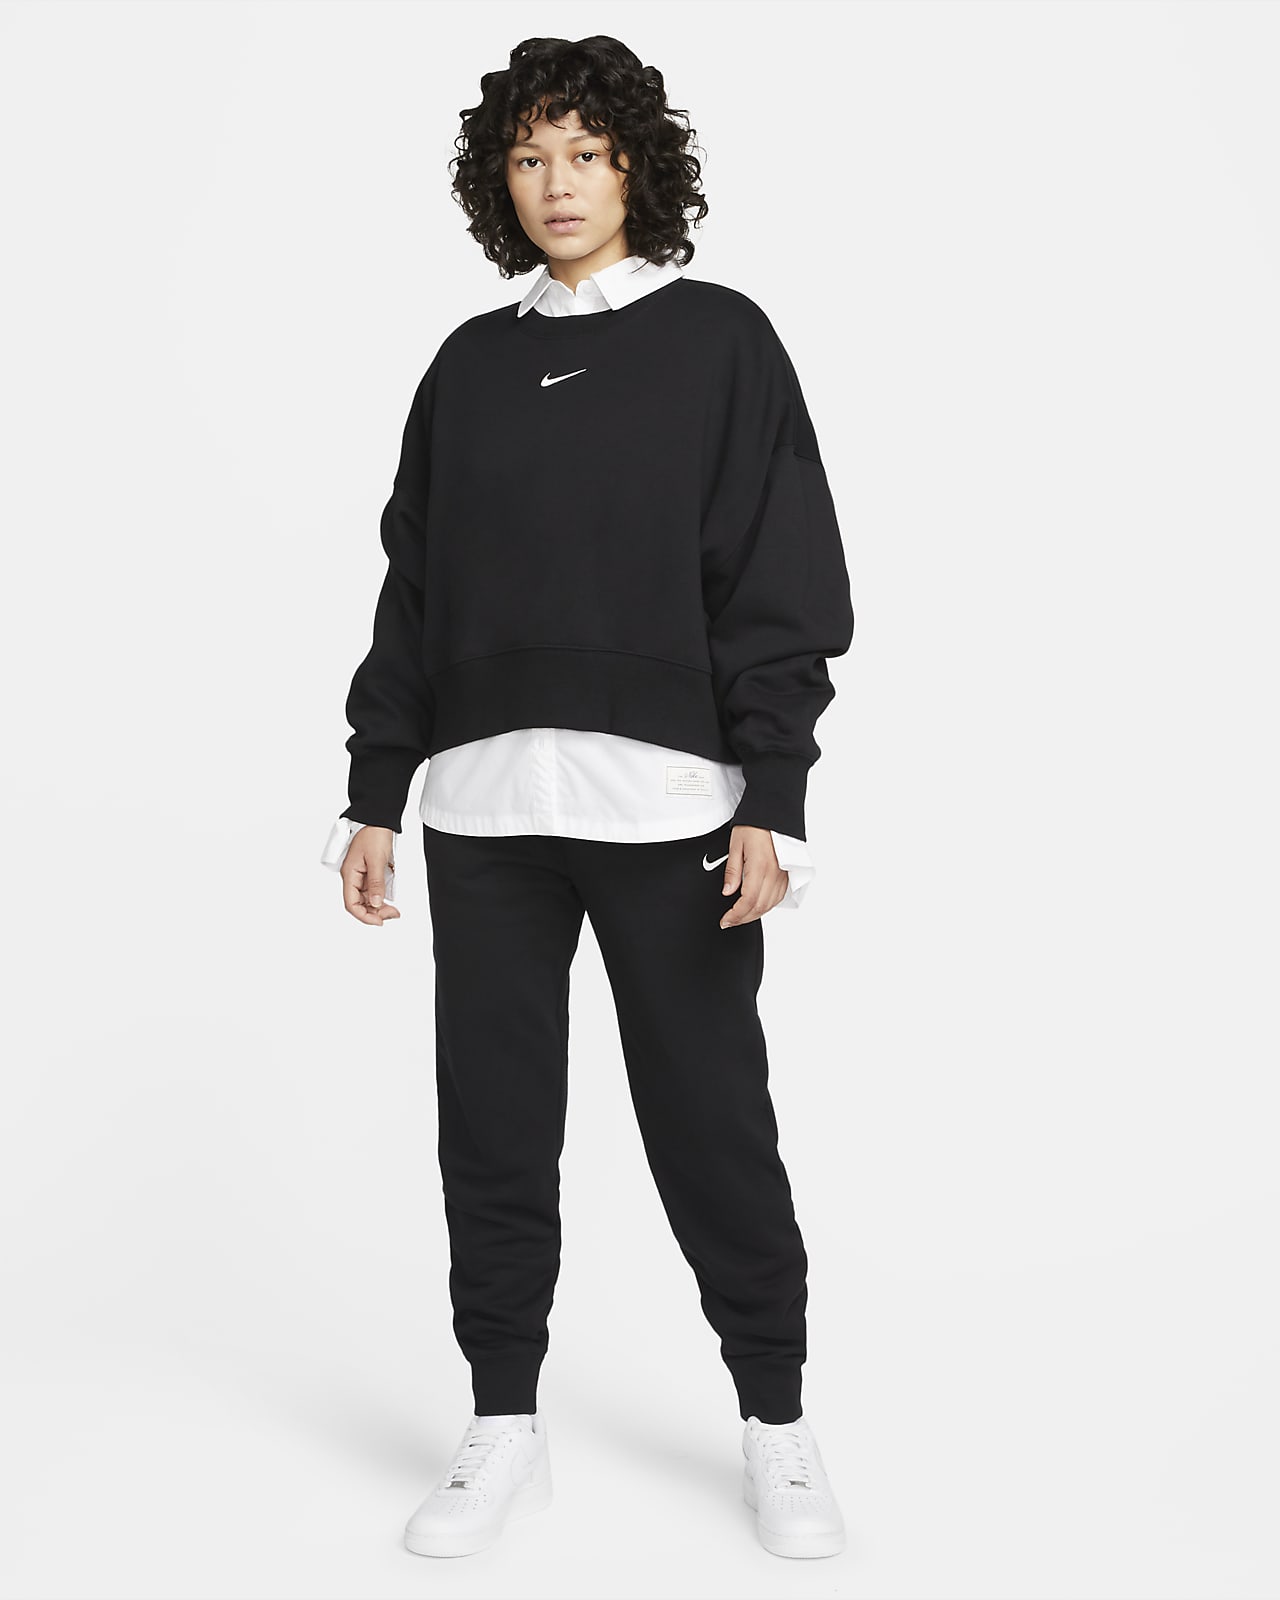 Nike Sportswear Phoenix Fleece Women's Oversized Crew-Neck